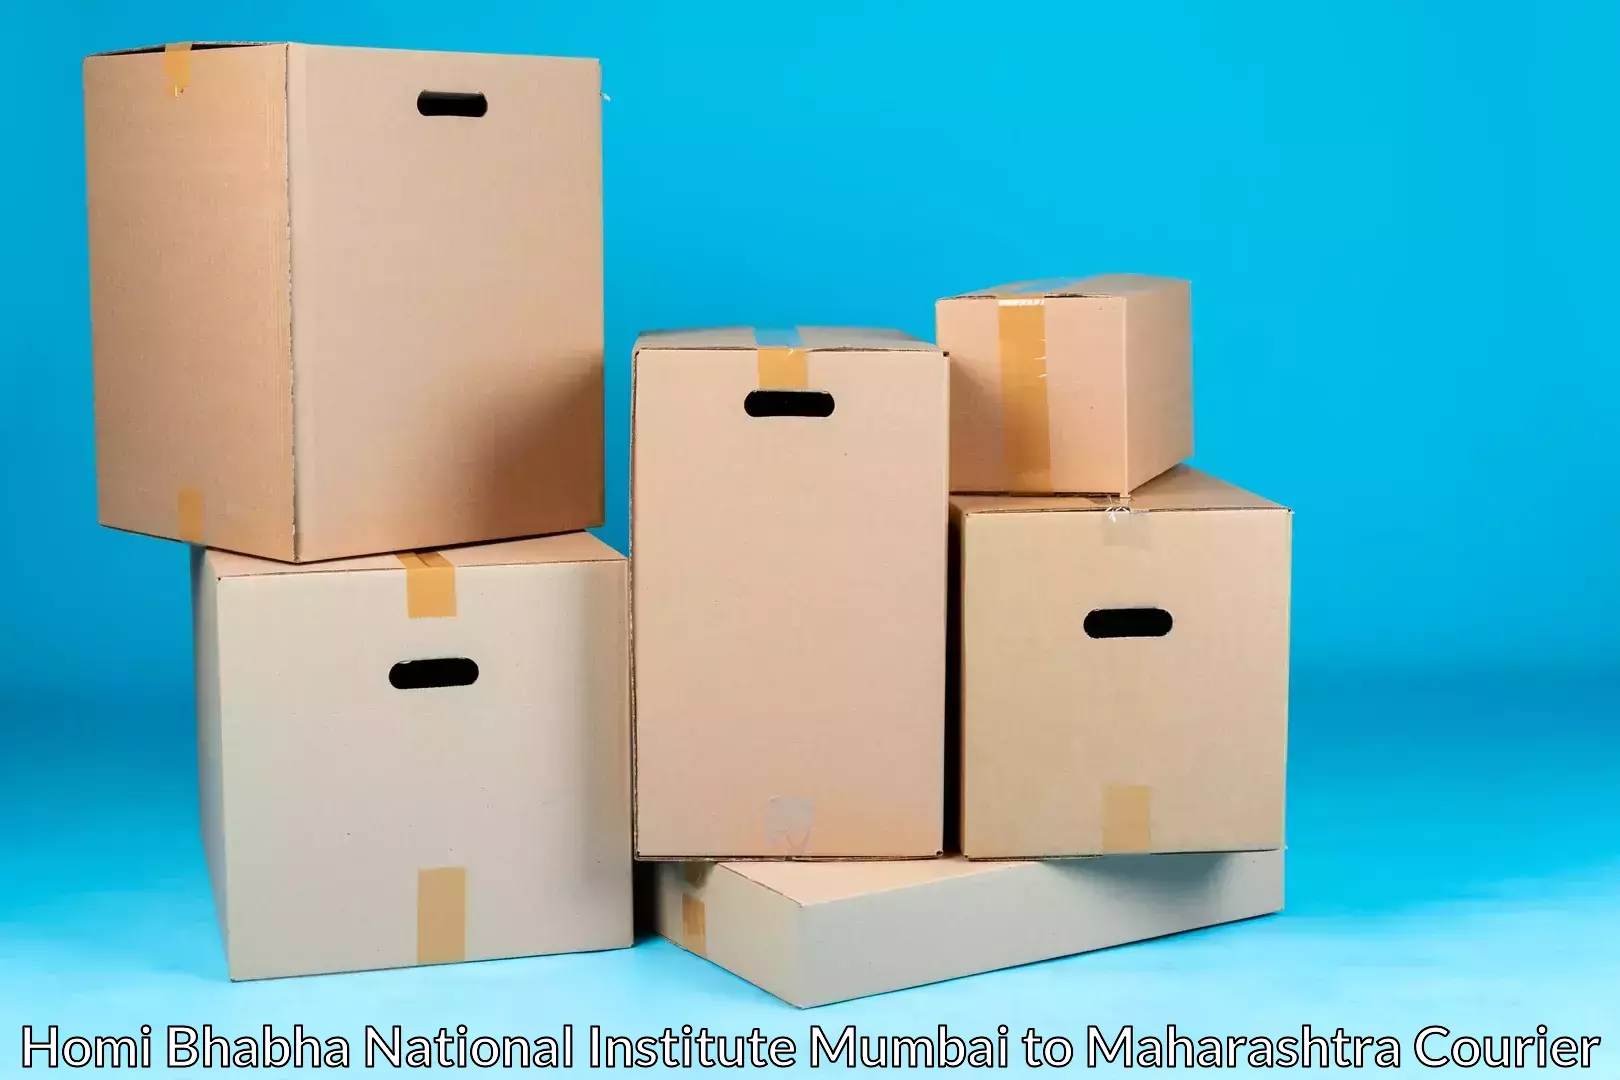 Moving and packing experts Homi Bhabha National Institute Mumbai to Murbad